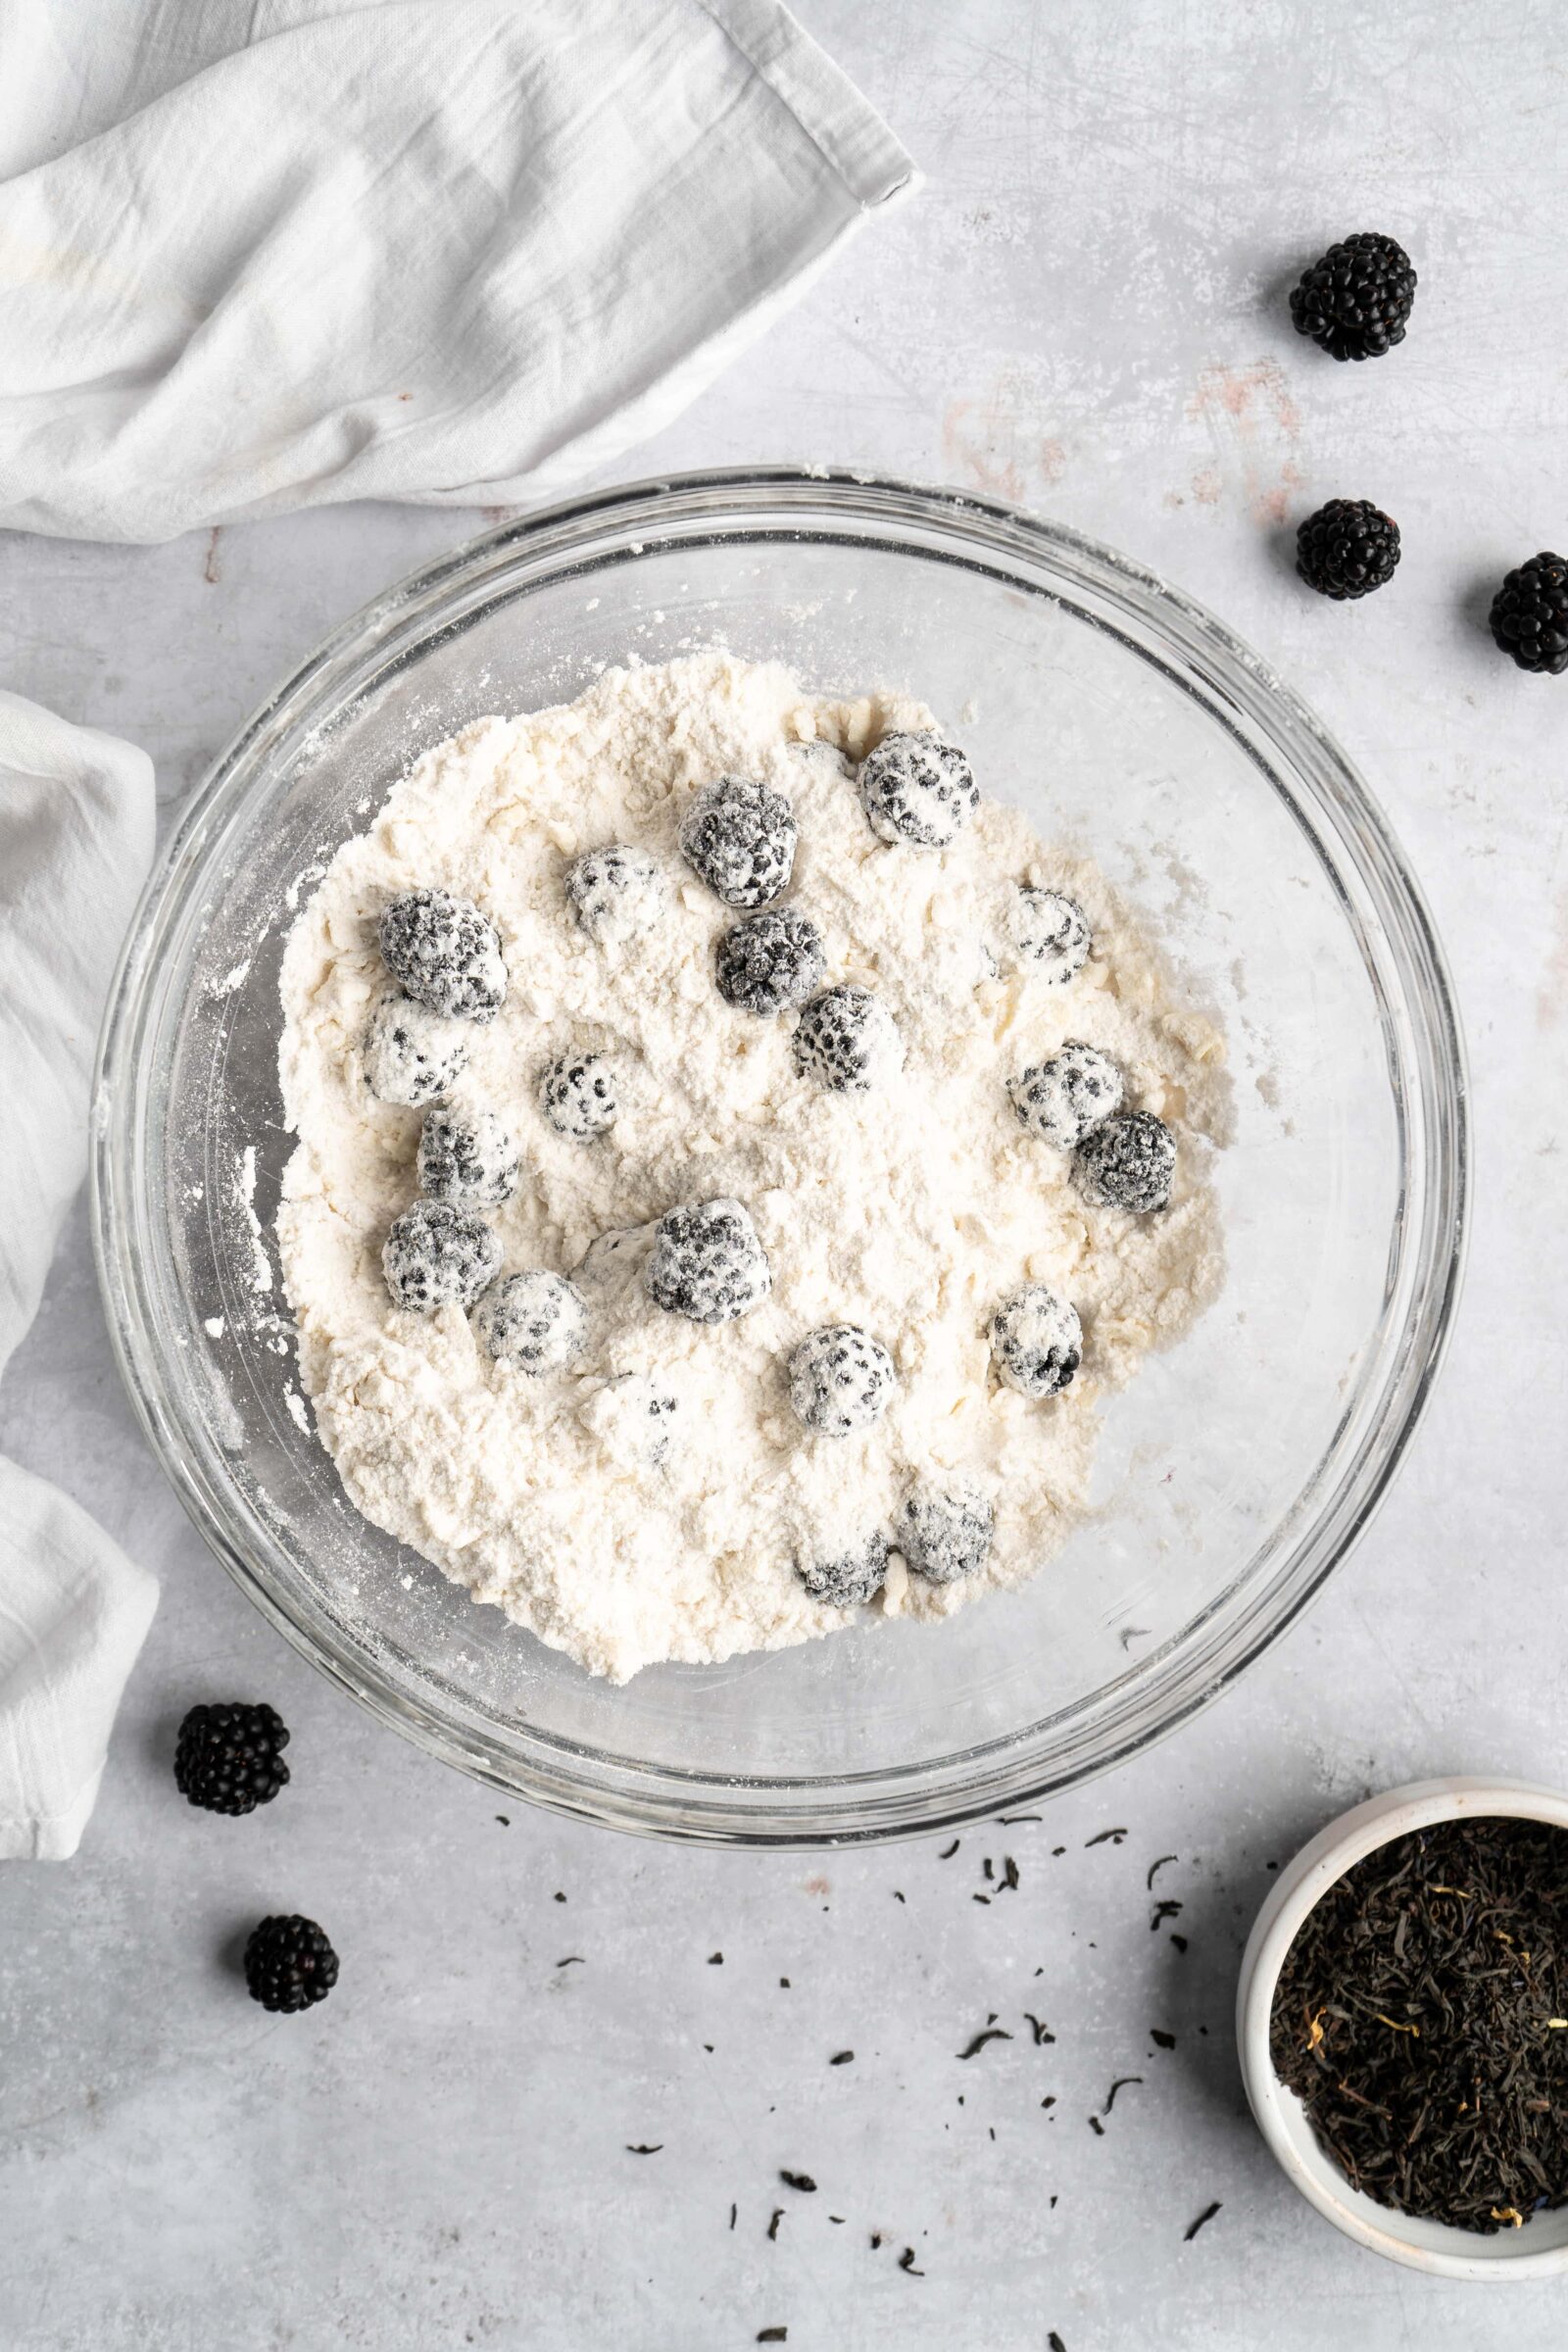 scones: blackberries tossed into flour mixture